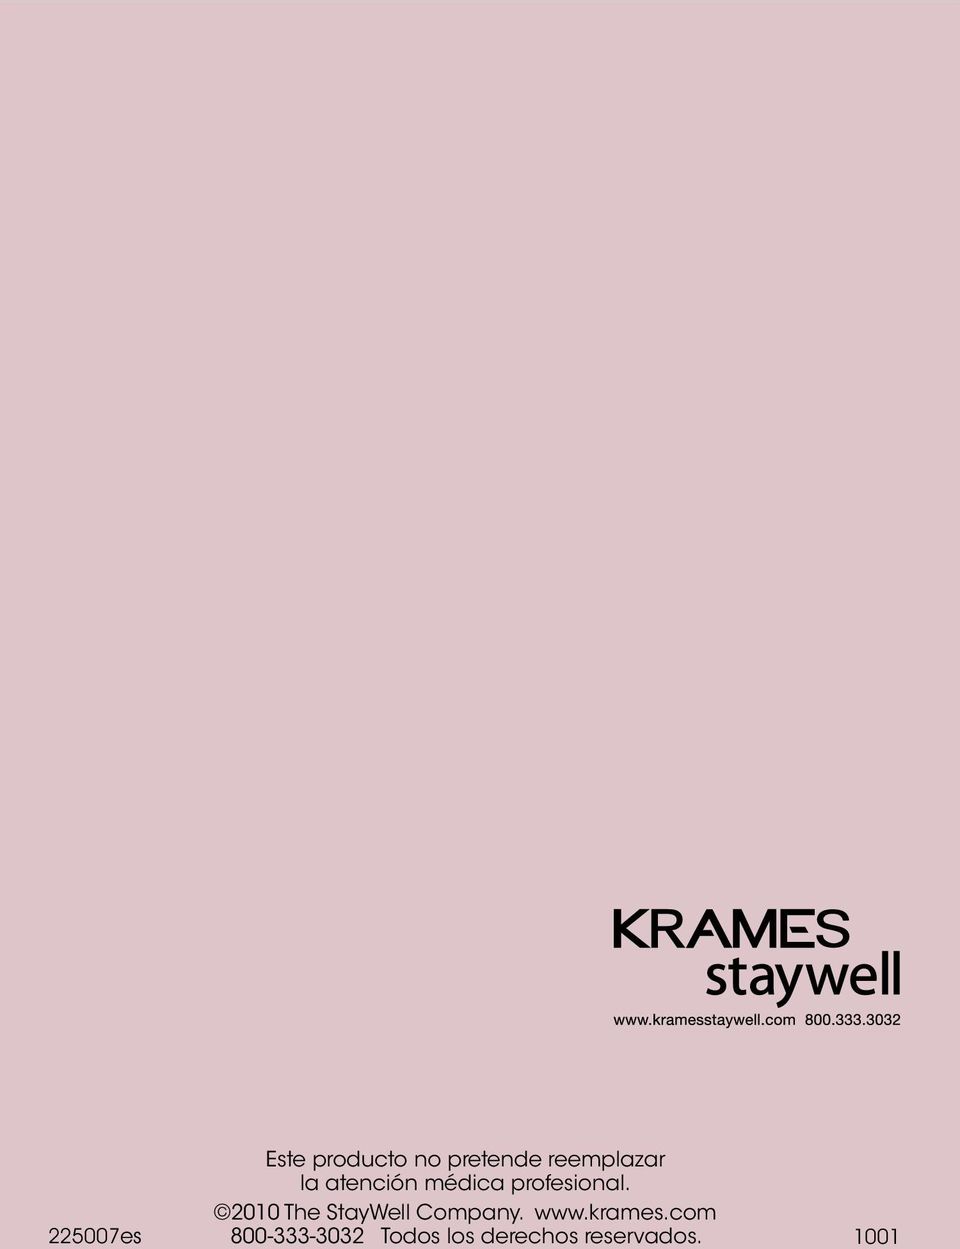 2010 The StayWell Company. www.krames.